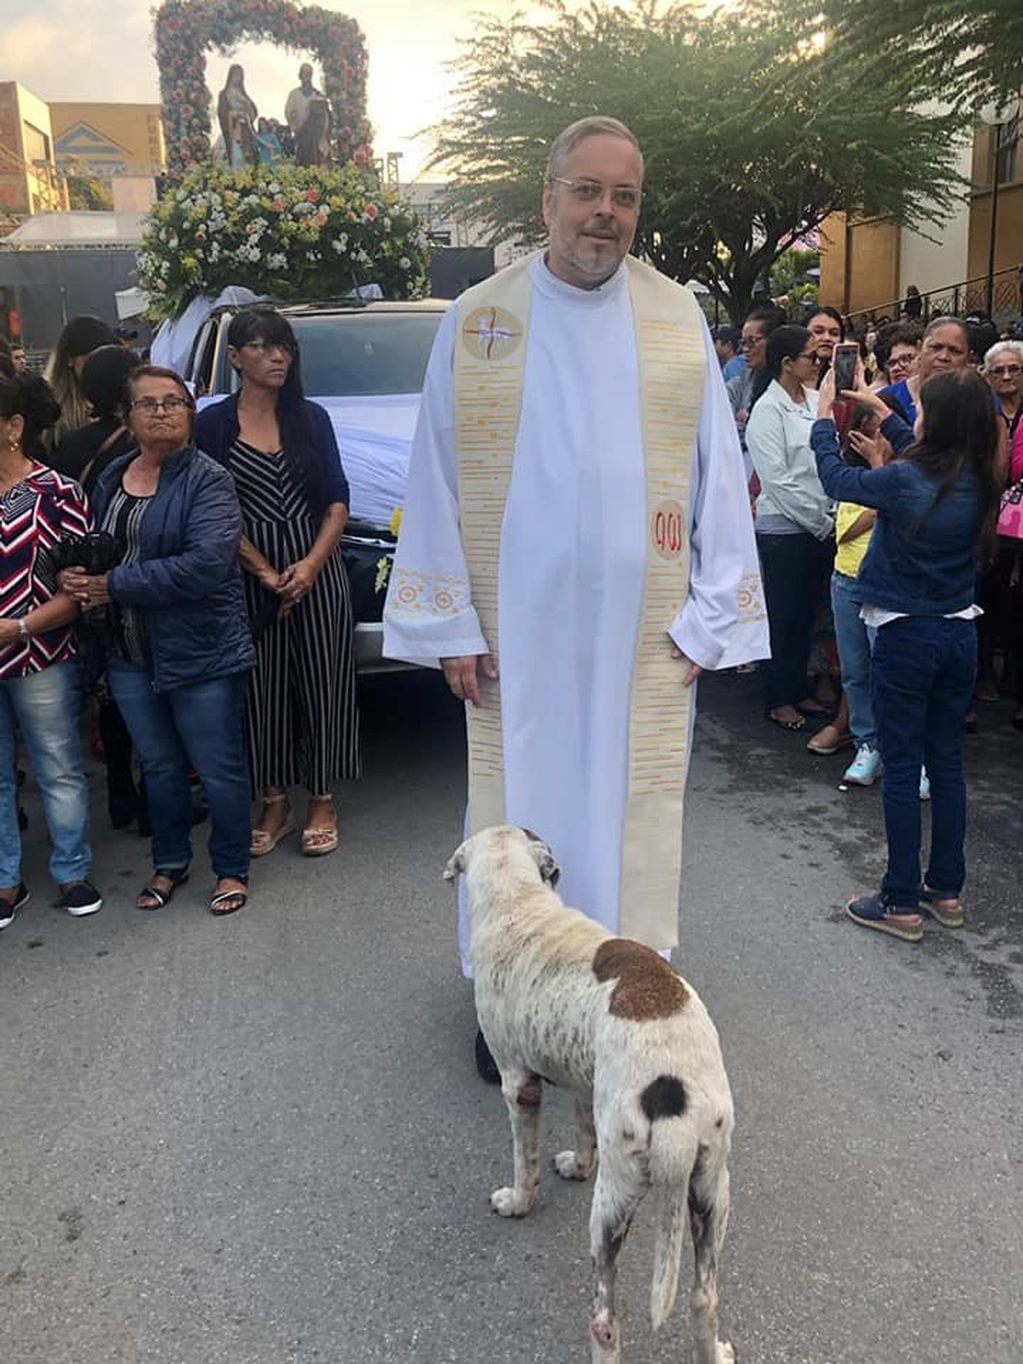 El párroco y su amor por los perros (Foto: Facebook/PadreJoao Paulo Araujo Gomes).